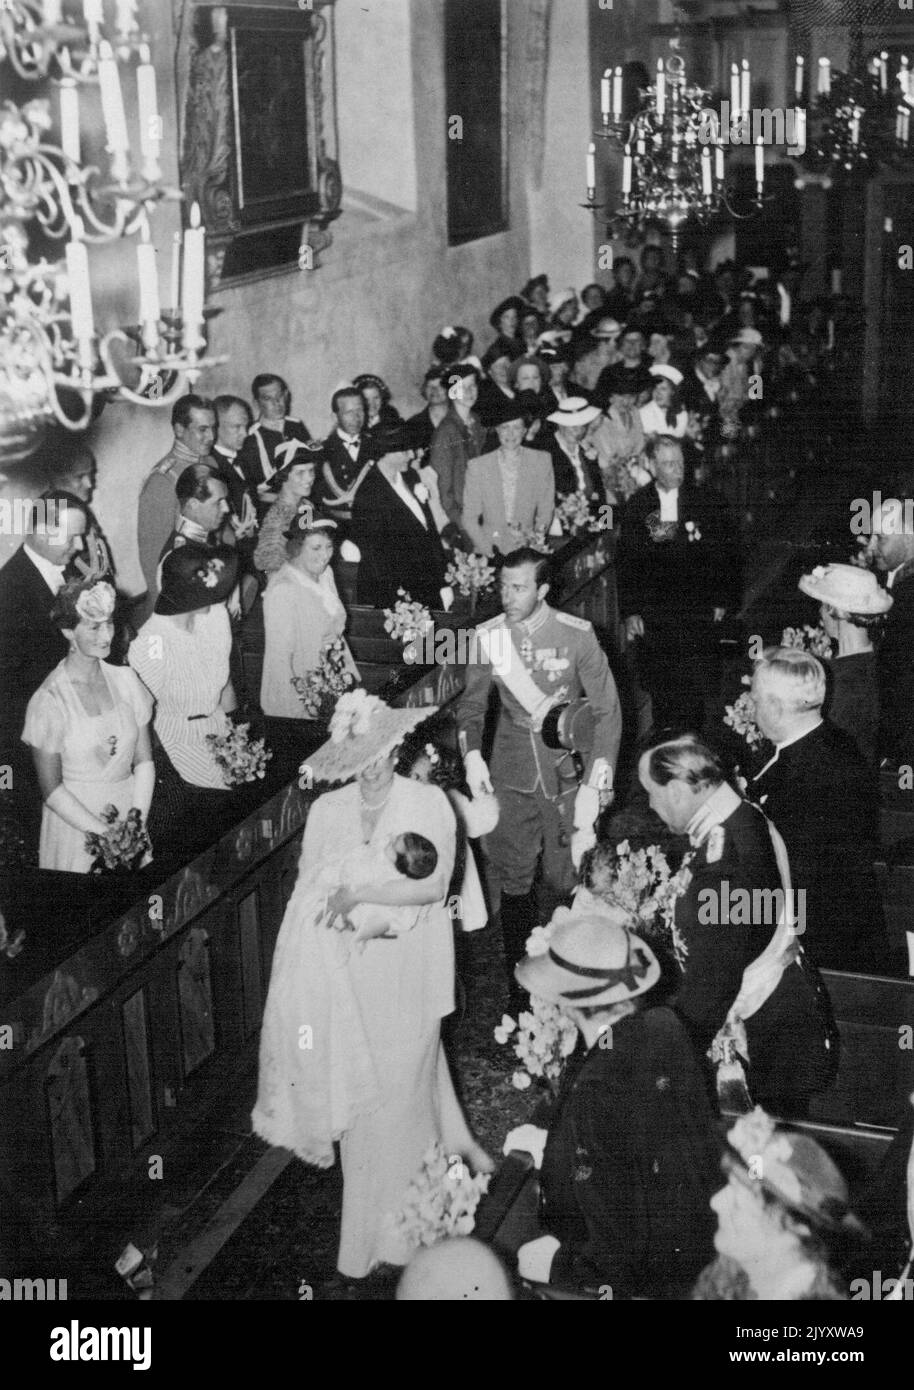 Baptême de la princesse suédoise Desiree. La cérémonie de baptême de la troisième fille du prince Gustaf Adolf de Suède et de la princesse Sybilla a eu lieu ces jours-ci à Stockholm. Les parents arrivent avec sa petite fille à l'église. 2 juillet 1938. (Photo de l'Atlantique) Banque D'Images